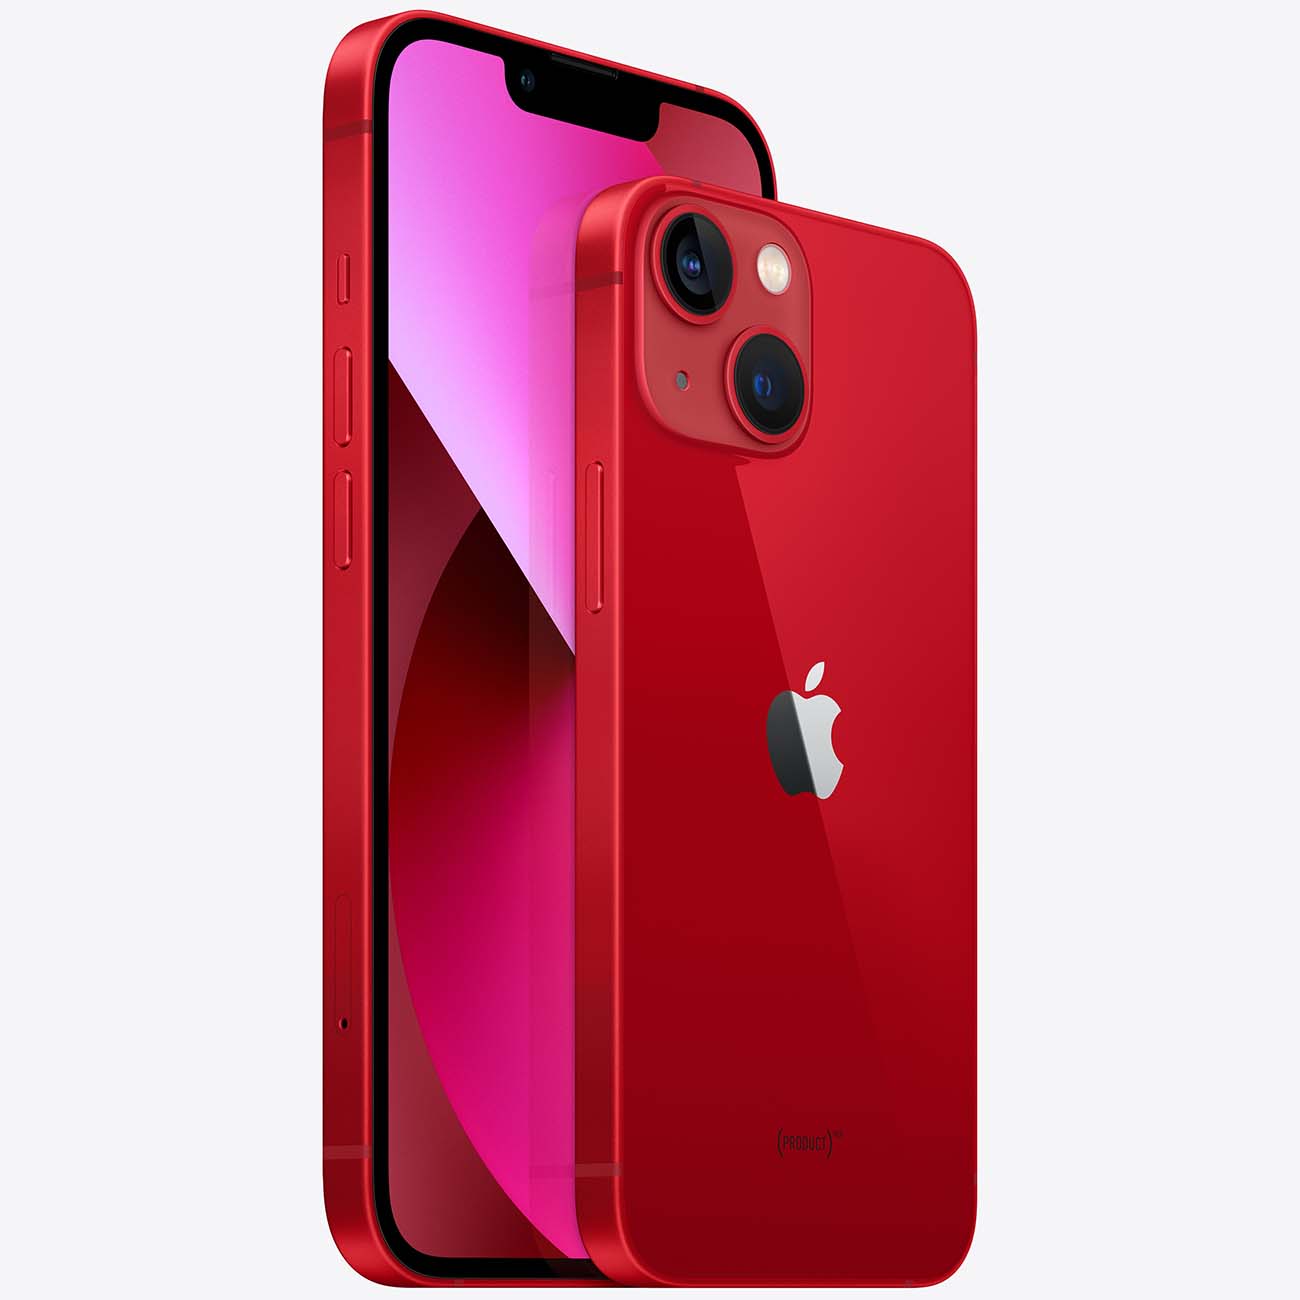 Купить смартфон apple iphone 13 512gb (product) red Apple iPhone 13 в официальном магазине Apple, Samsung, Xiaomi. iPixel.ru Купить, заказ, кредит, рассрочка, отзывы,  характеристики, цена,  фотографии, в подарок.